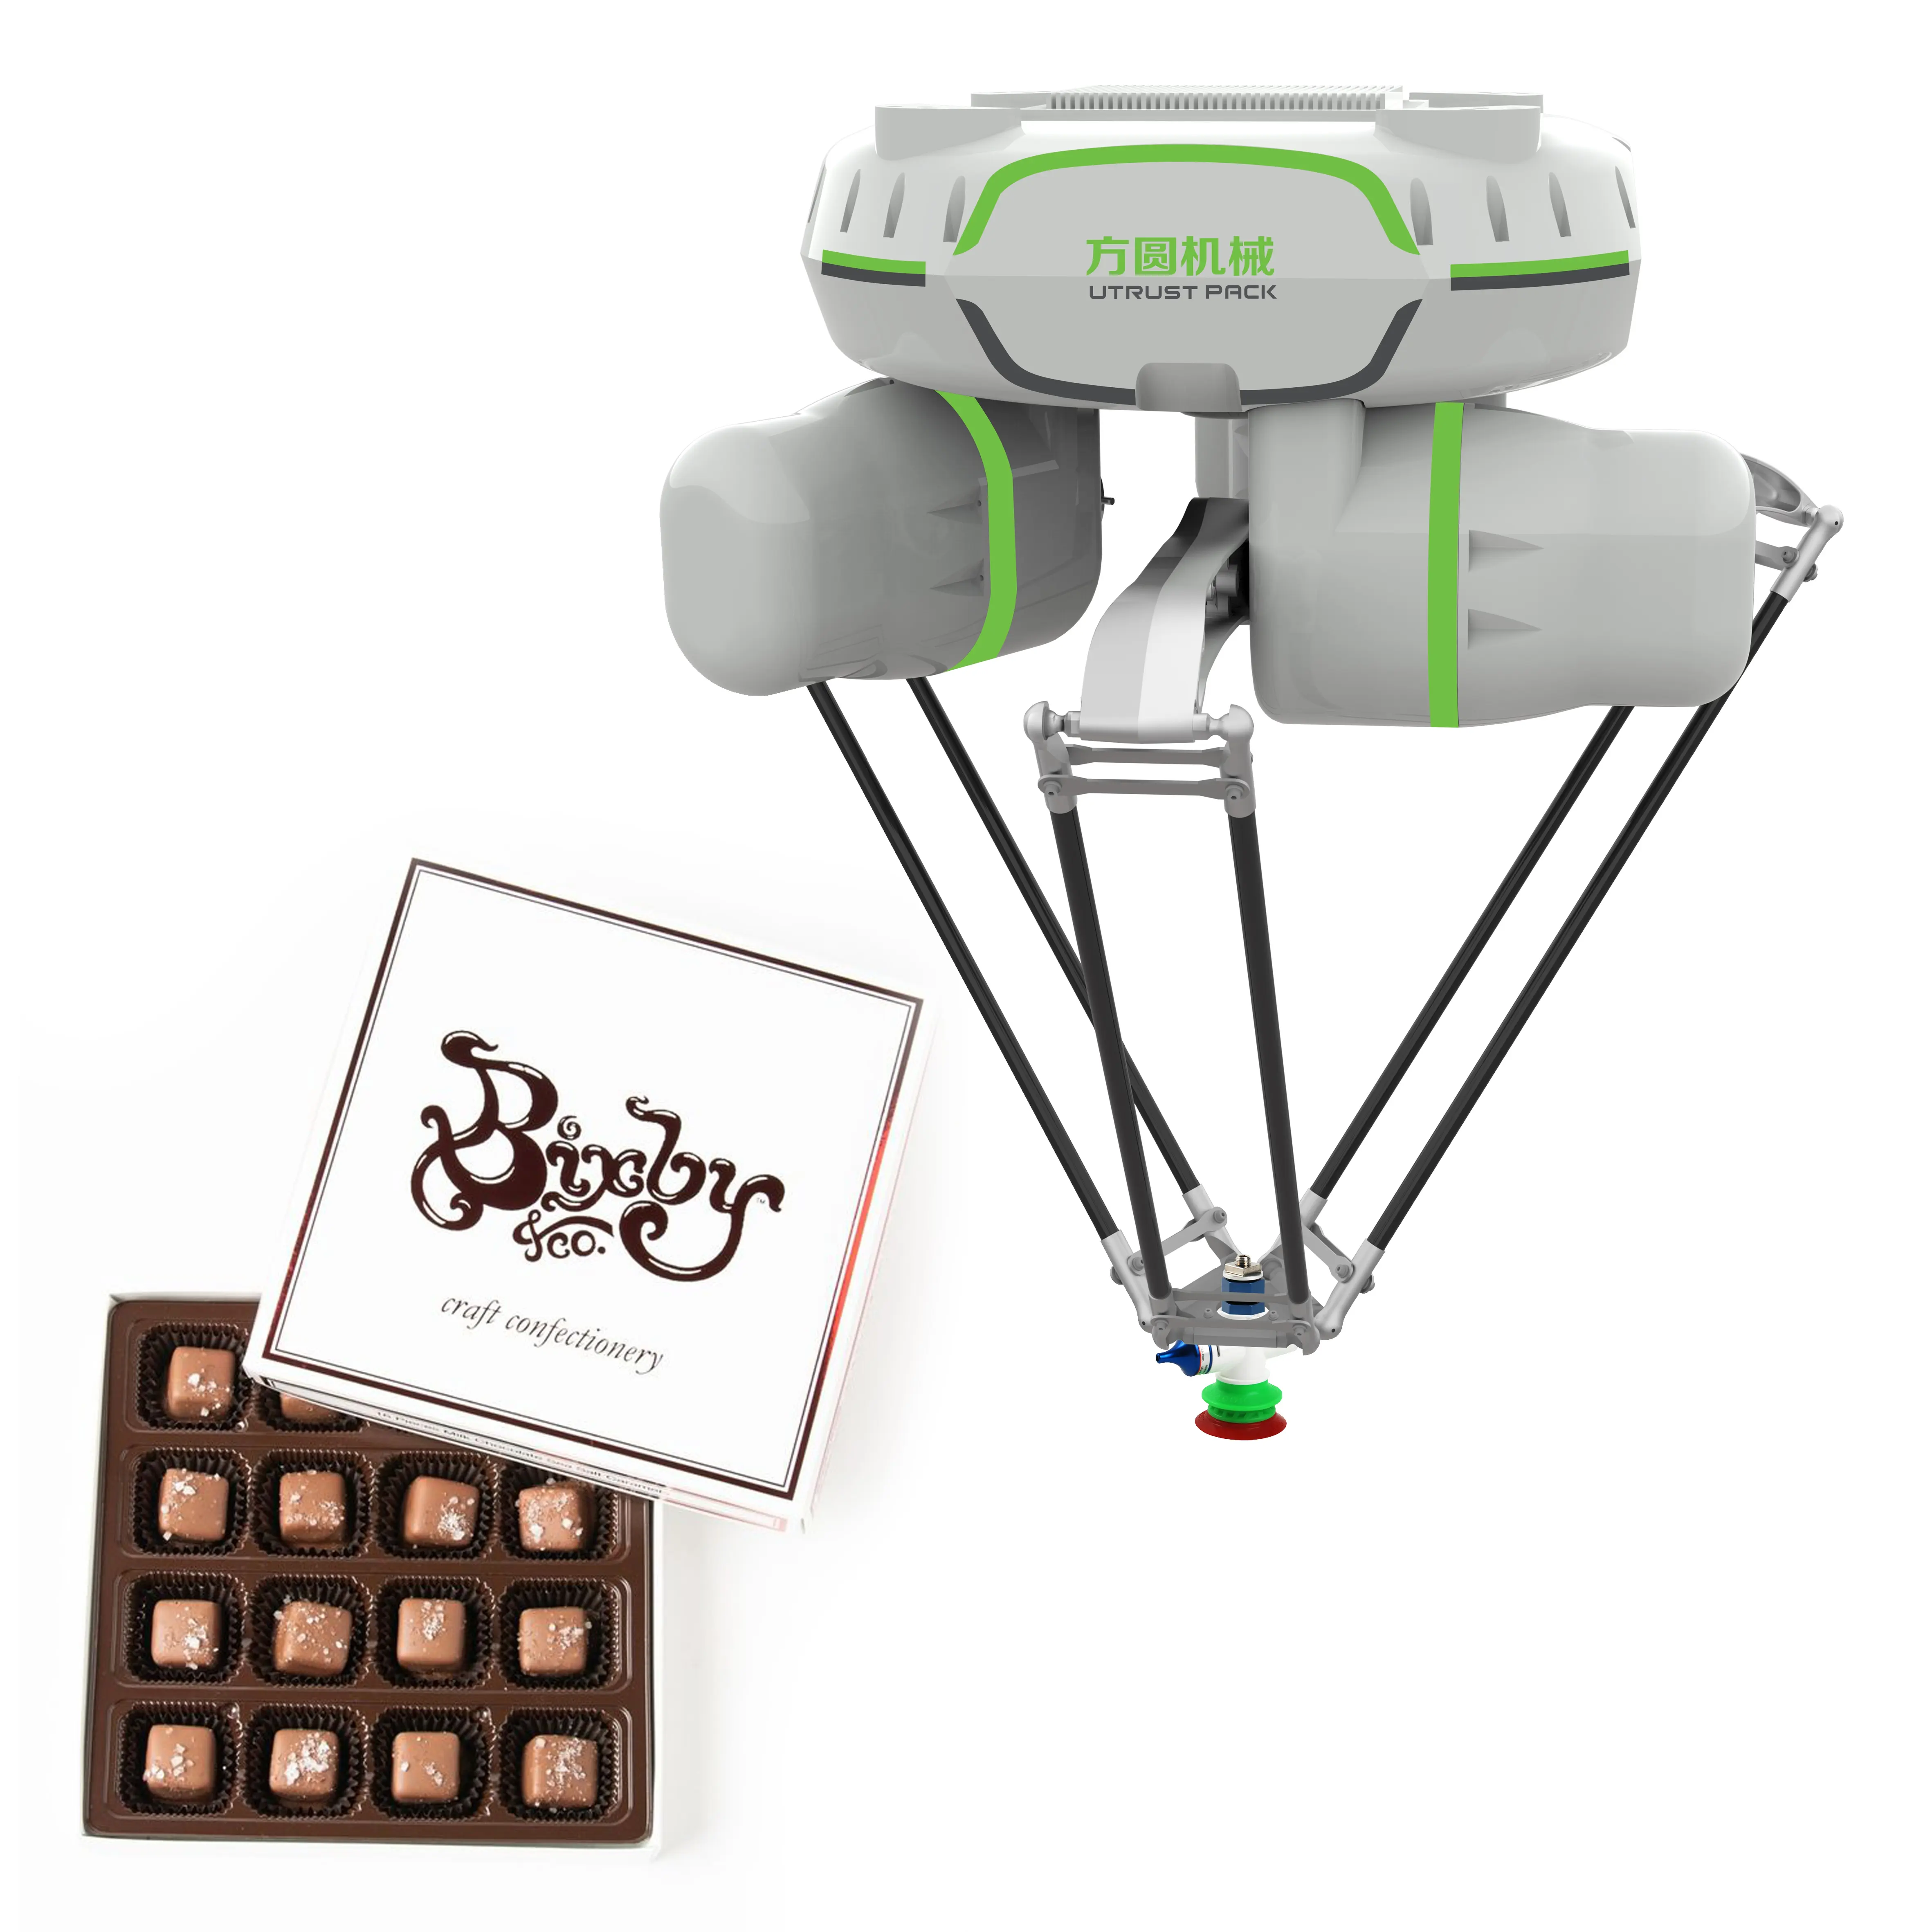 OEM industrielle 4-Achsen-Delta-Roboter-Sortierlinie für Getränkbeutel Dessertkuchen Gebäck Schokolade Plätzchen Kekse